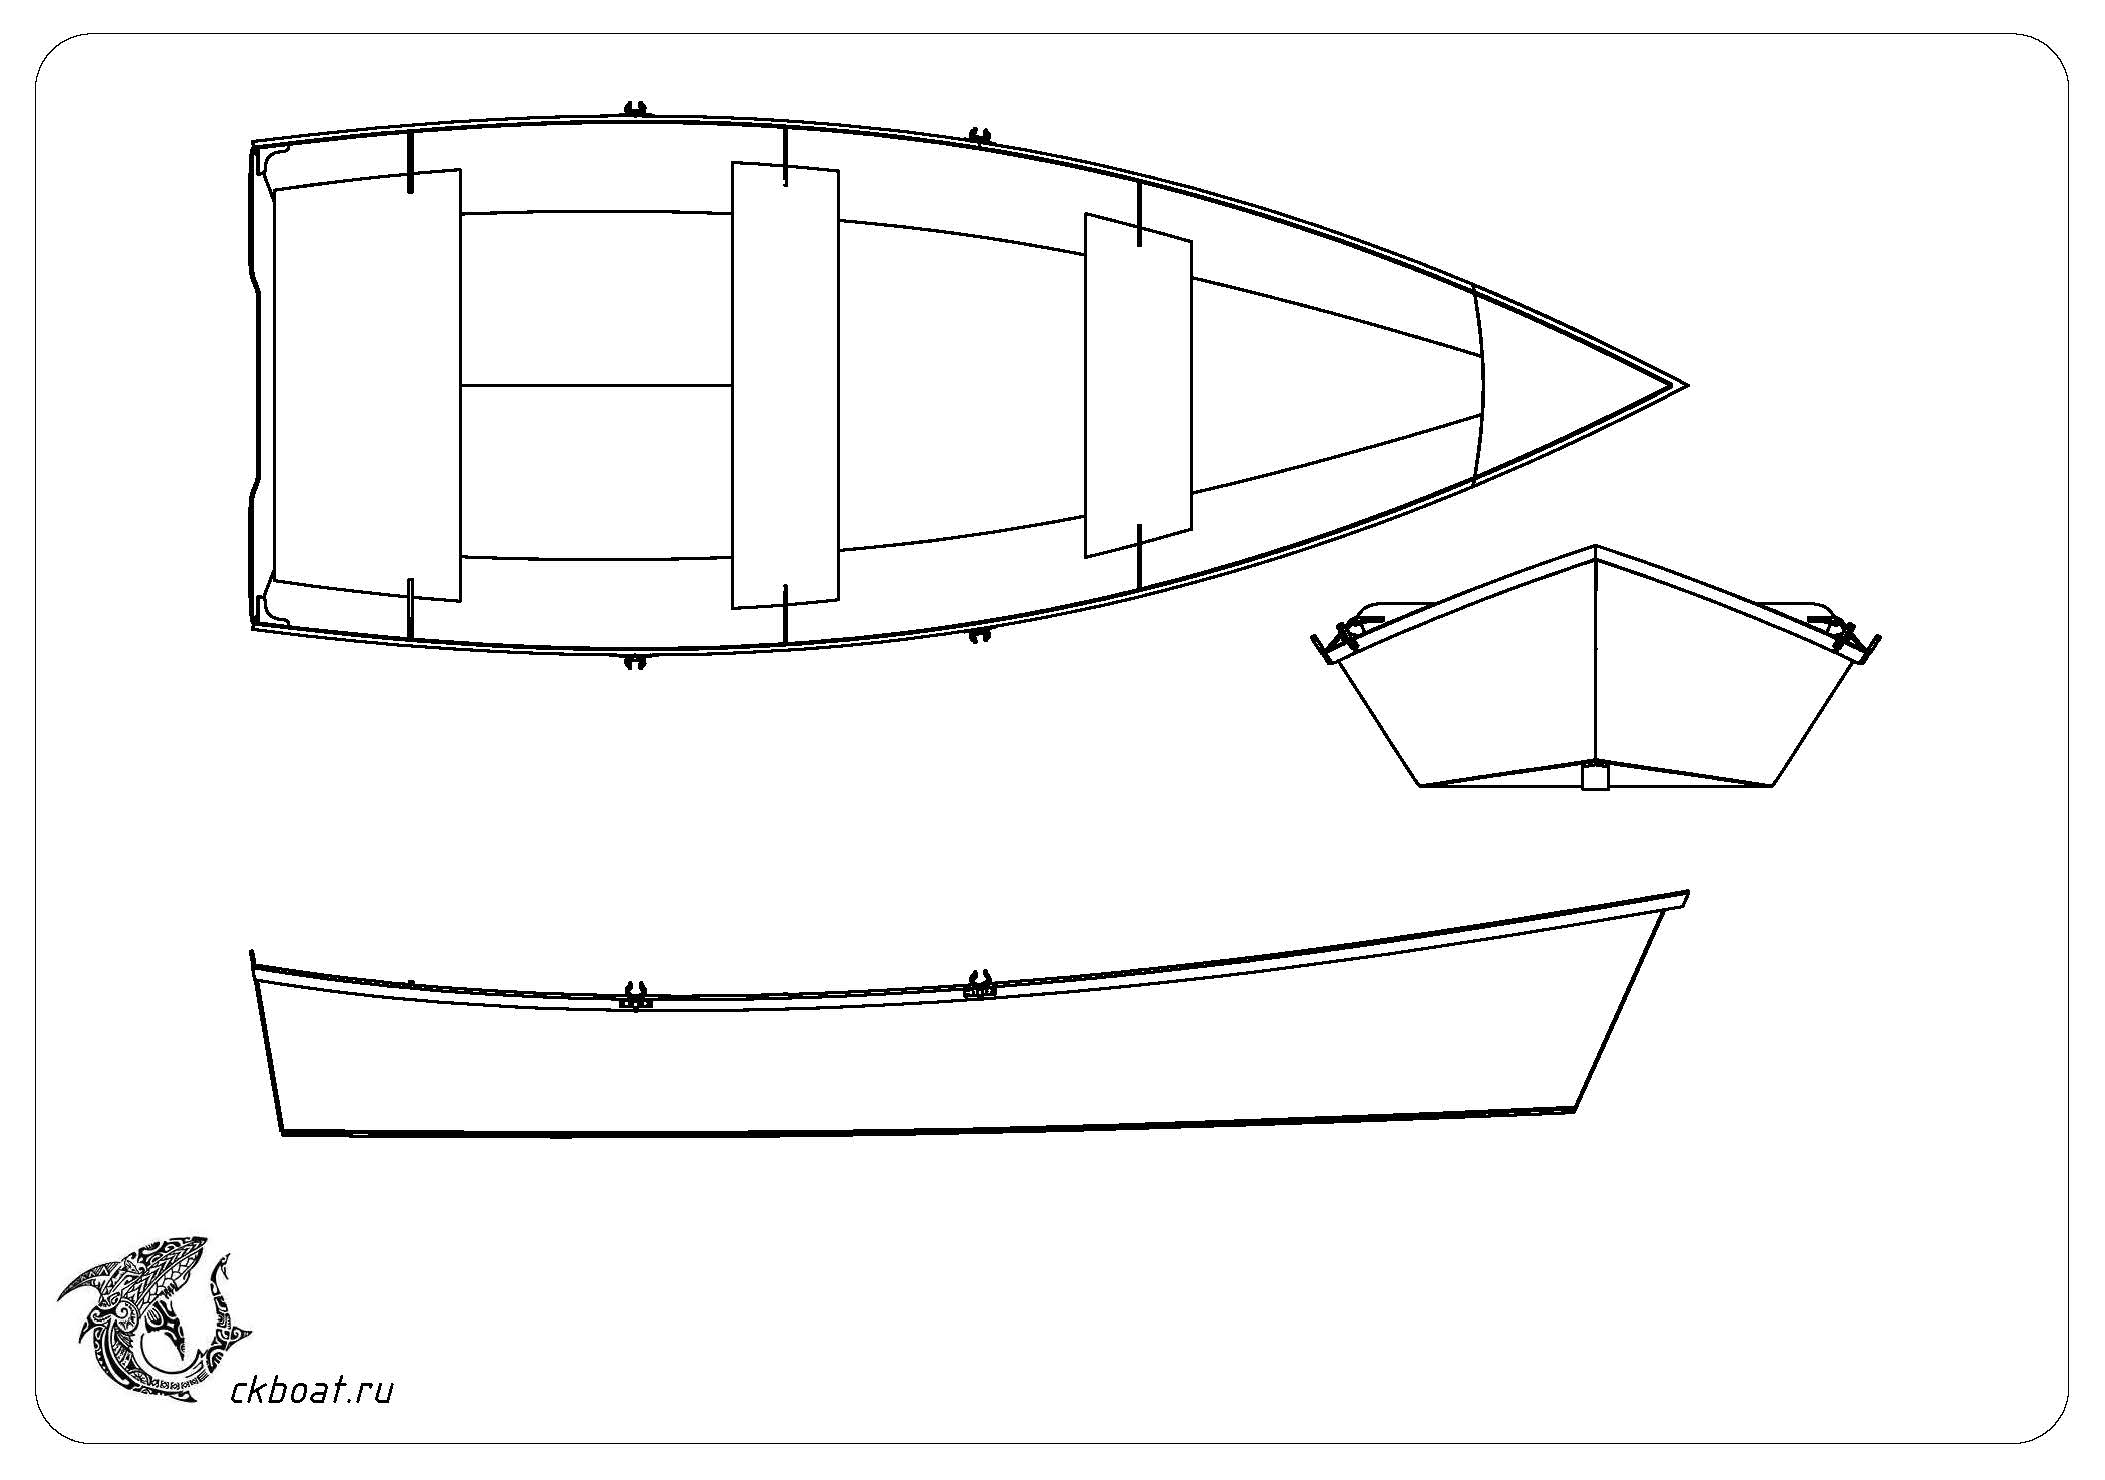 Фанерная моторная лодка Аргази 4